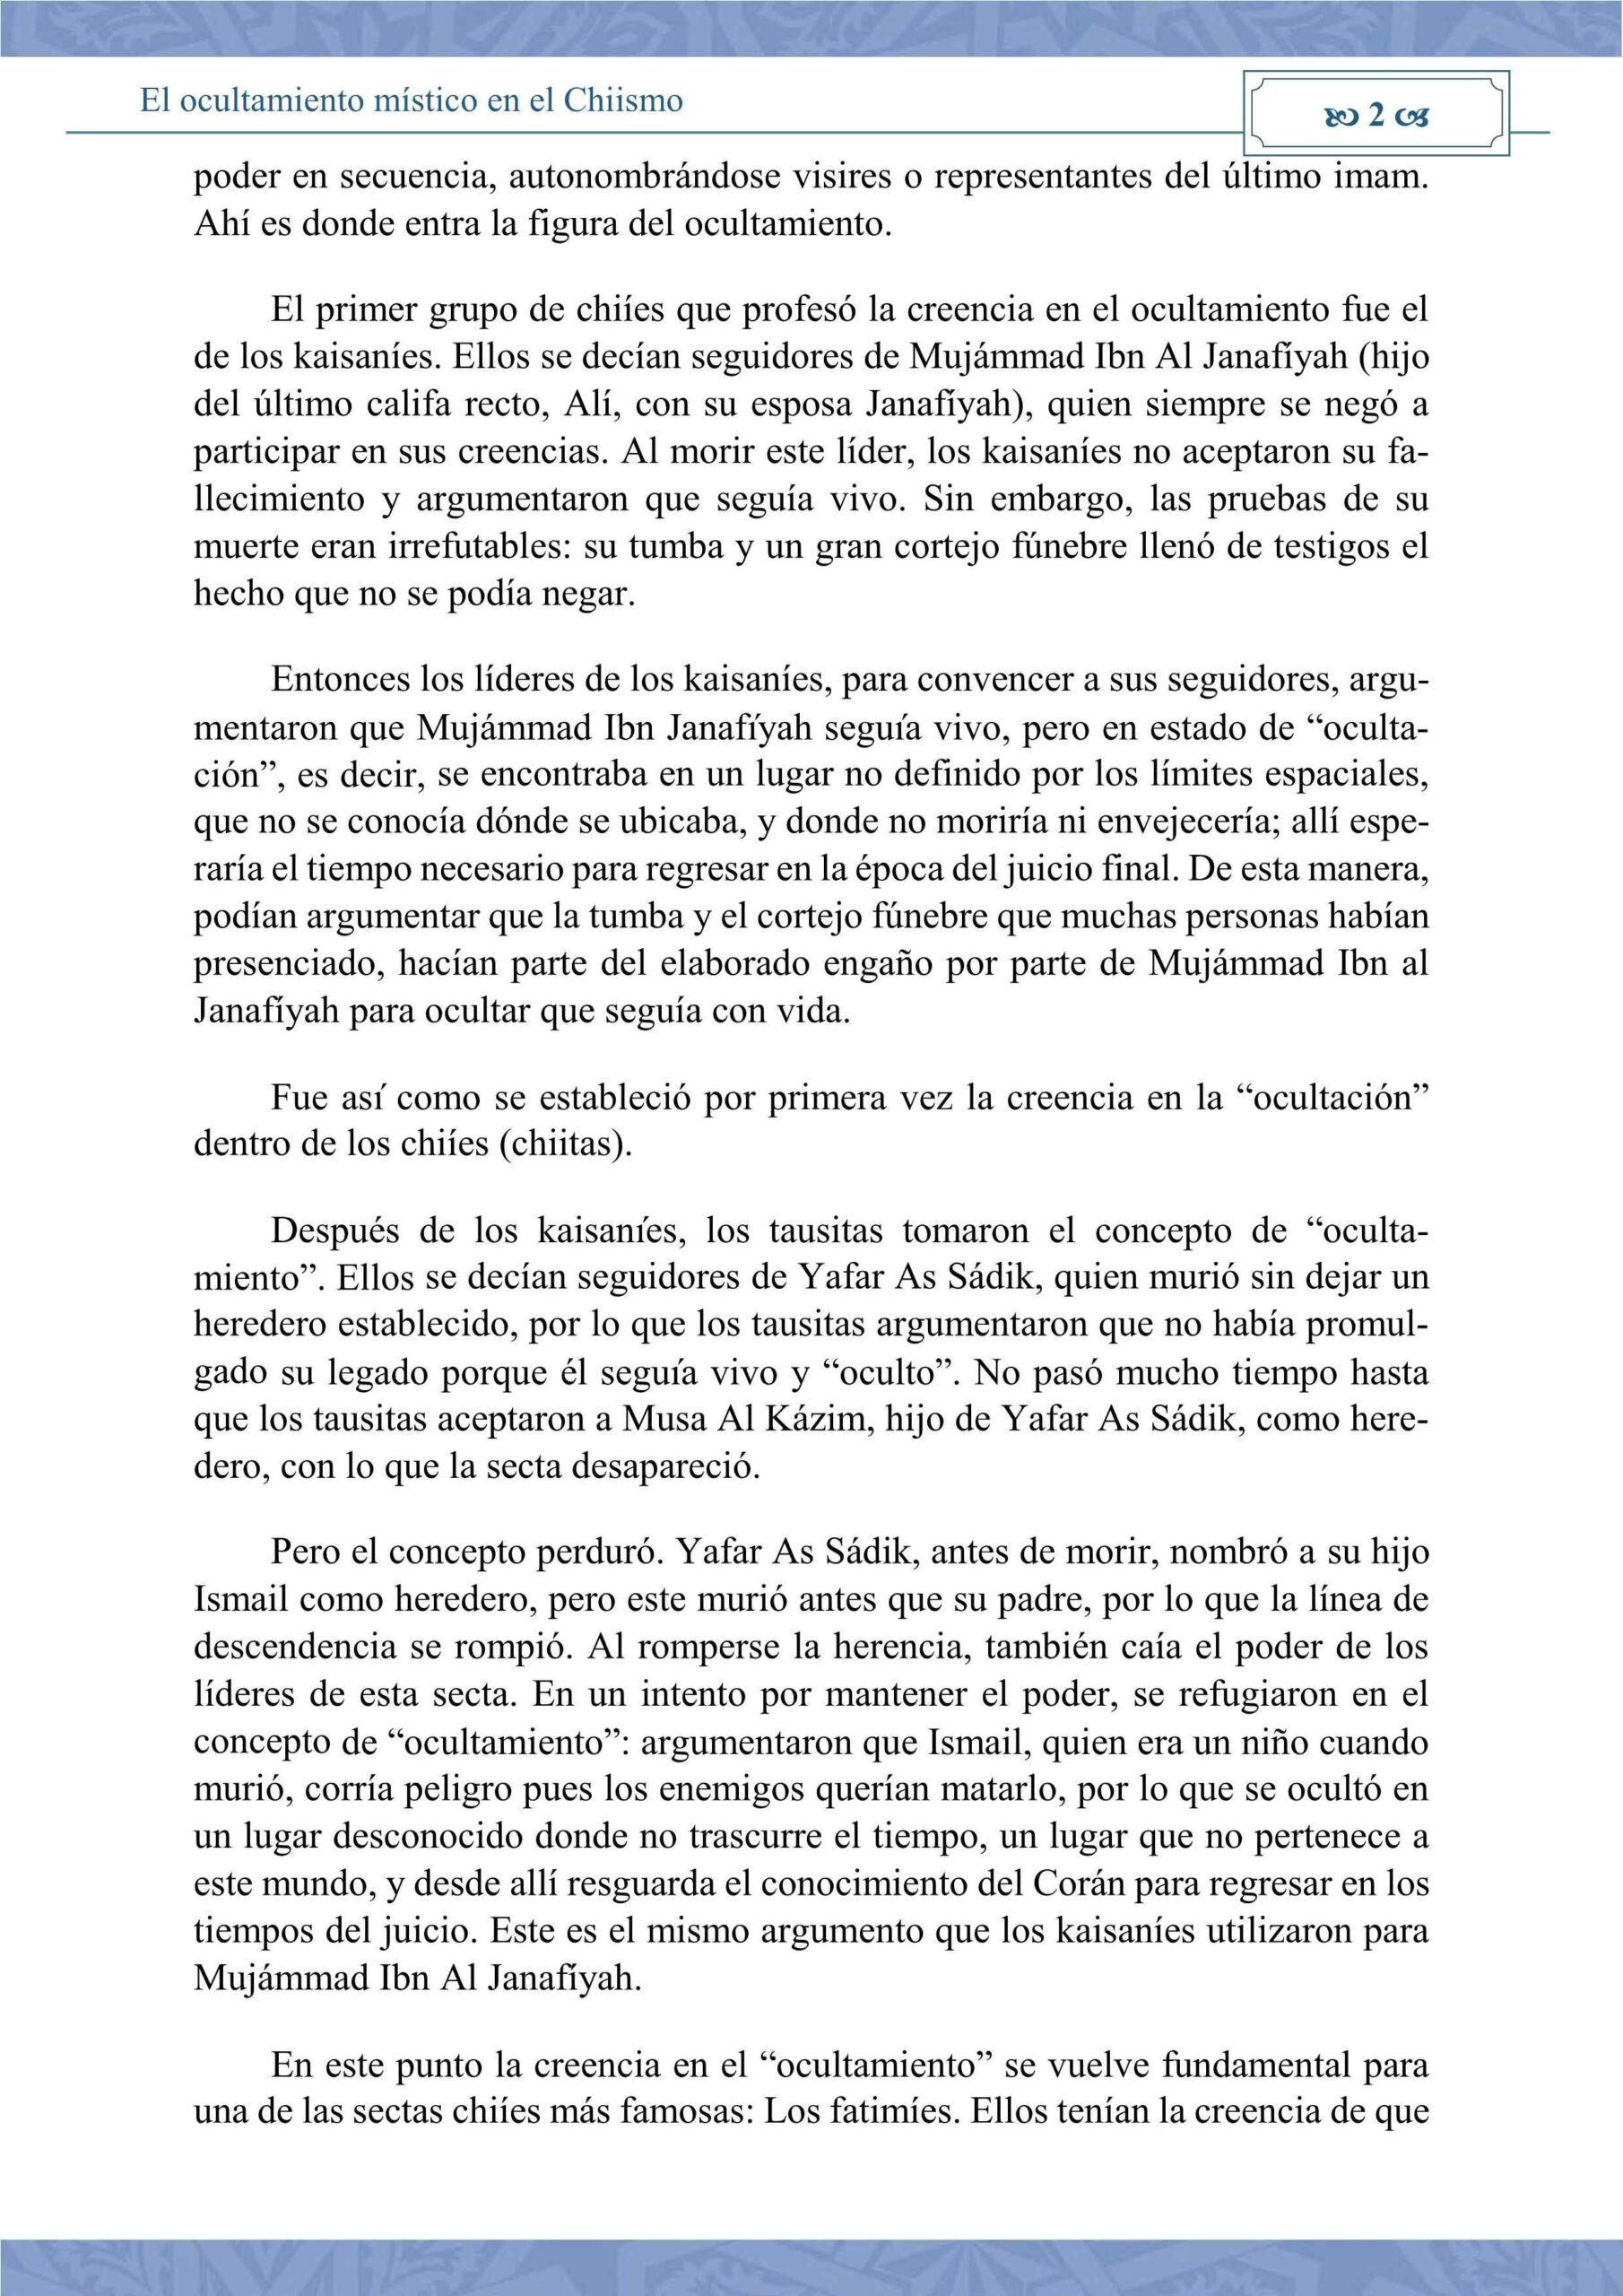 إسباني  عقيدة الإمام الغائب عند الشيعة  El ocultamiento místico en el chiismo.pdf, 7-Sayfa 